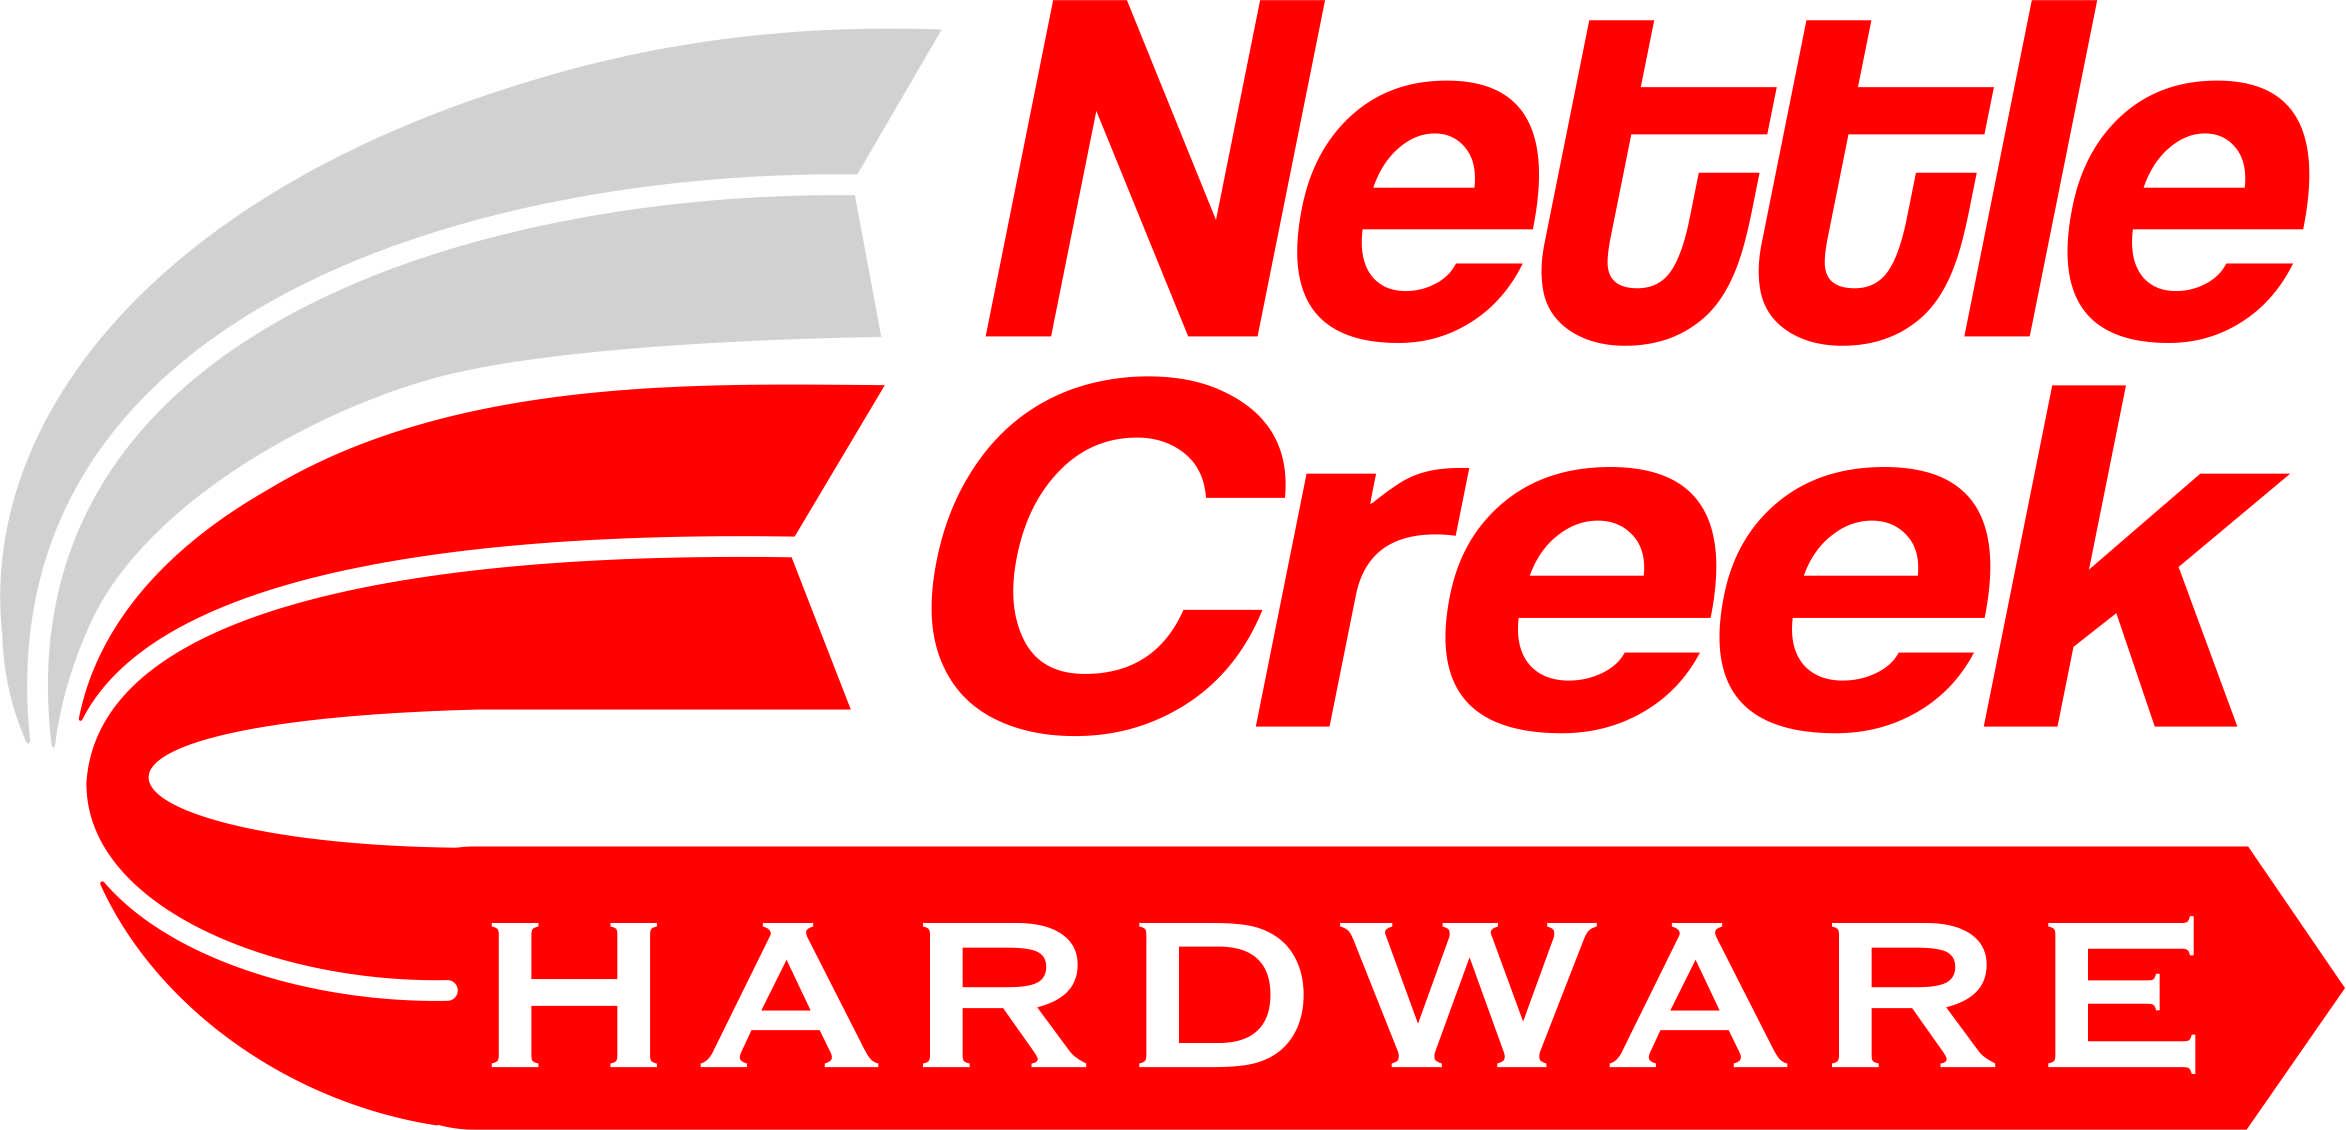 Nettle Creek Hardware